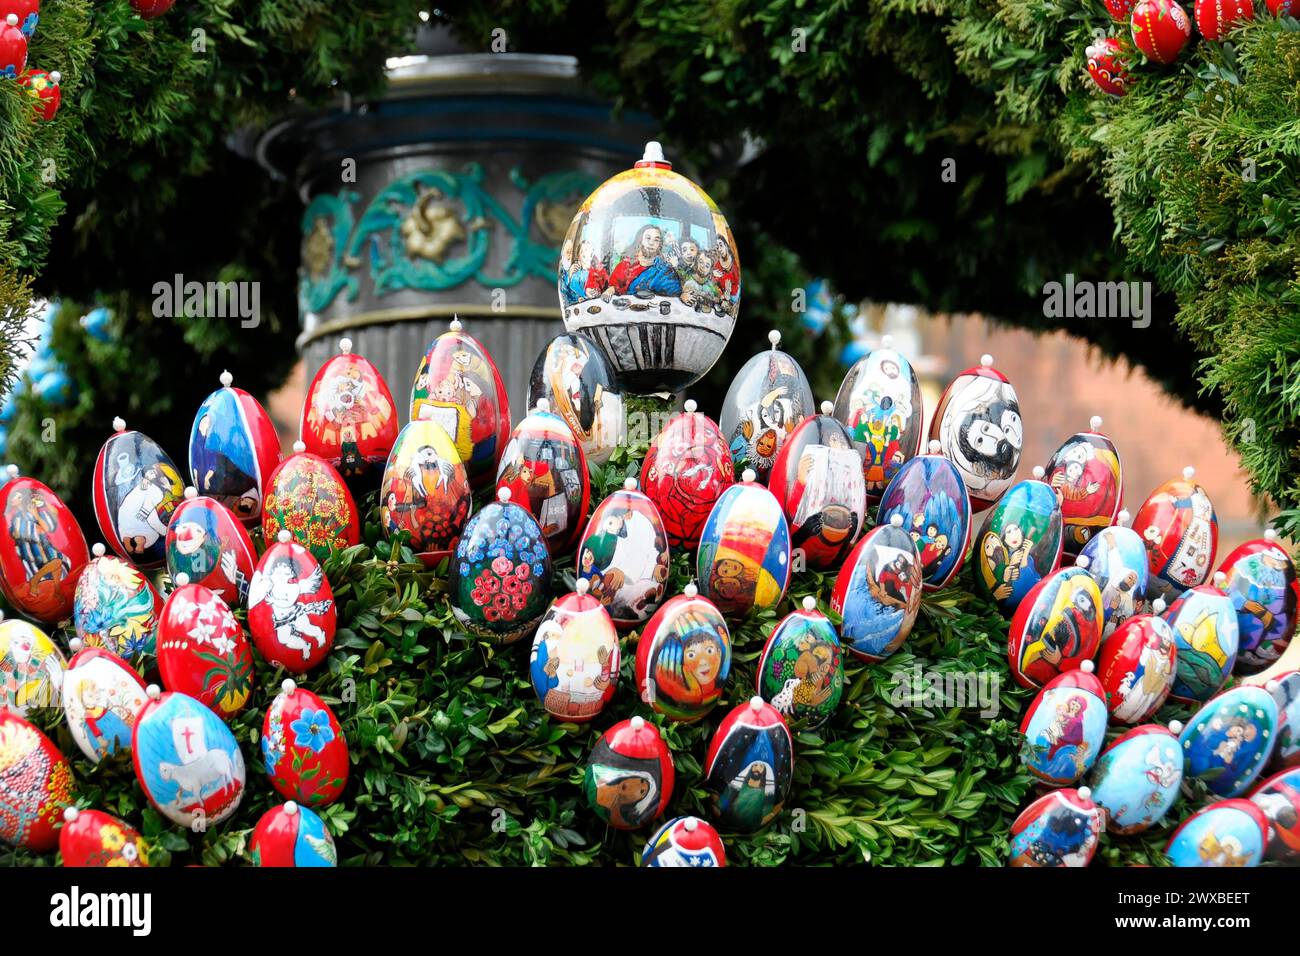 Vue détaillée d'oeufs de Pâques colorés et peints artistiquement, fontaine de Pâques, Schechingen, Bade-Wuerttemberg, Allemagne Banque D'Images